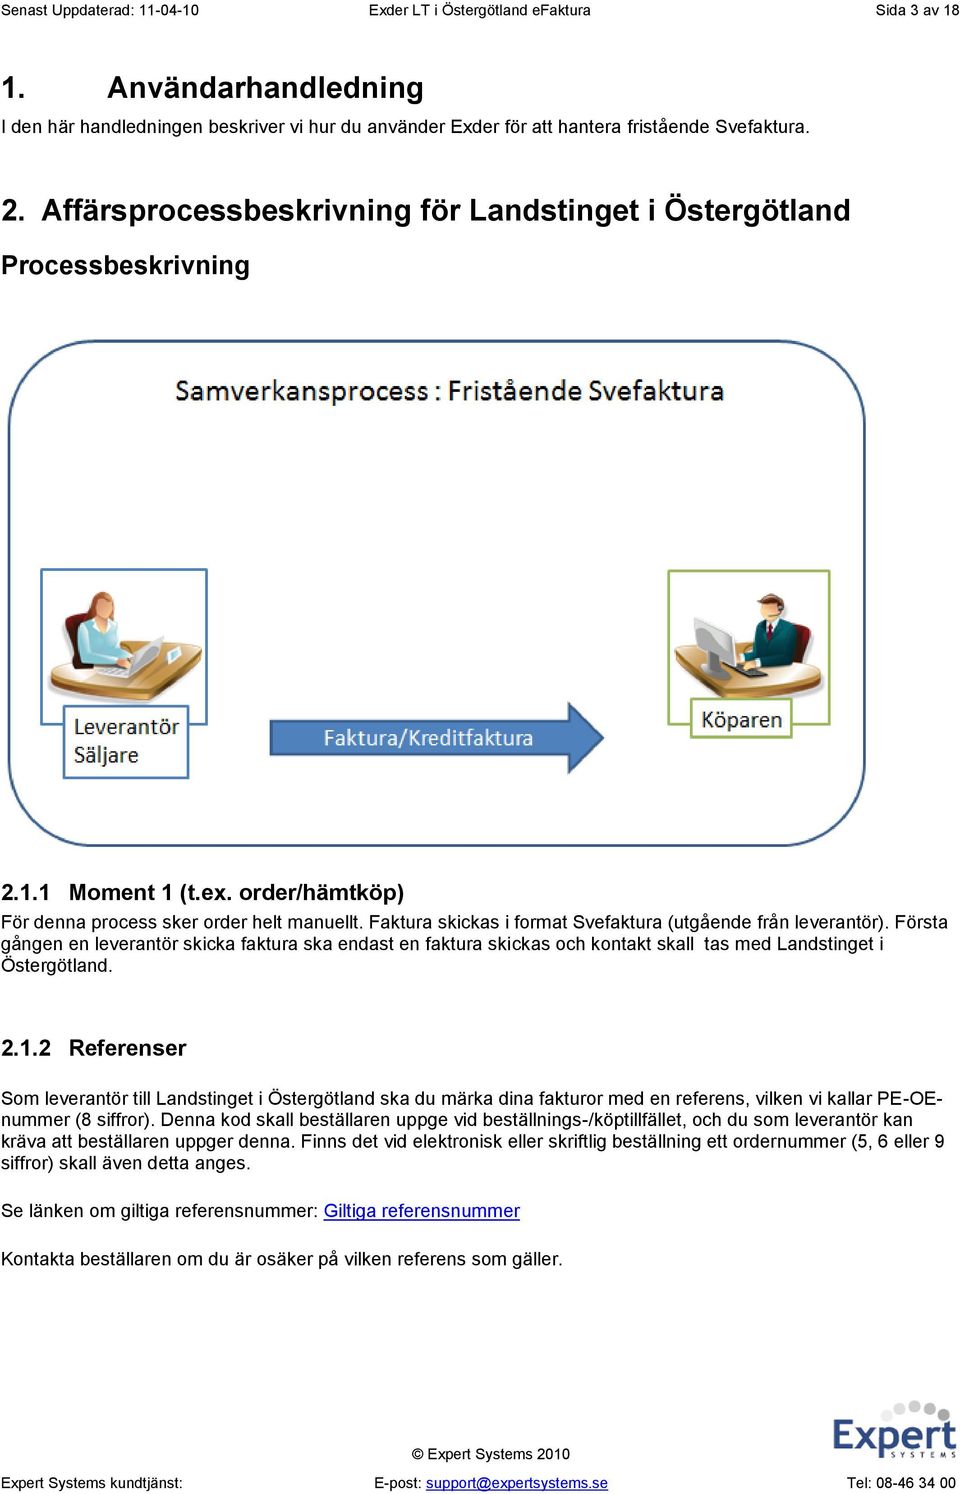 Faktura skickas i format Svefaktura (utgående från leverantör). Första gången en leverantör skicka faktura ska endast en faktura skickas och kontakt skall tas med Landstinget i Östergötland. 2.1.